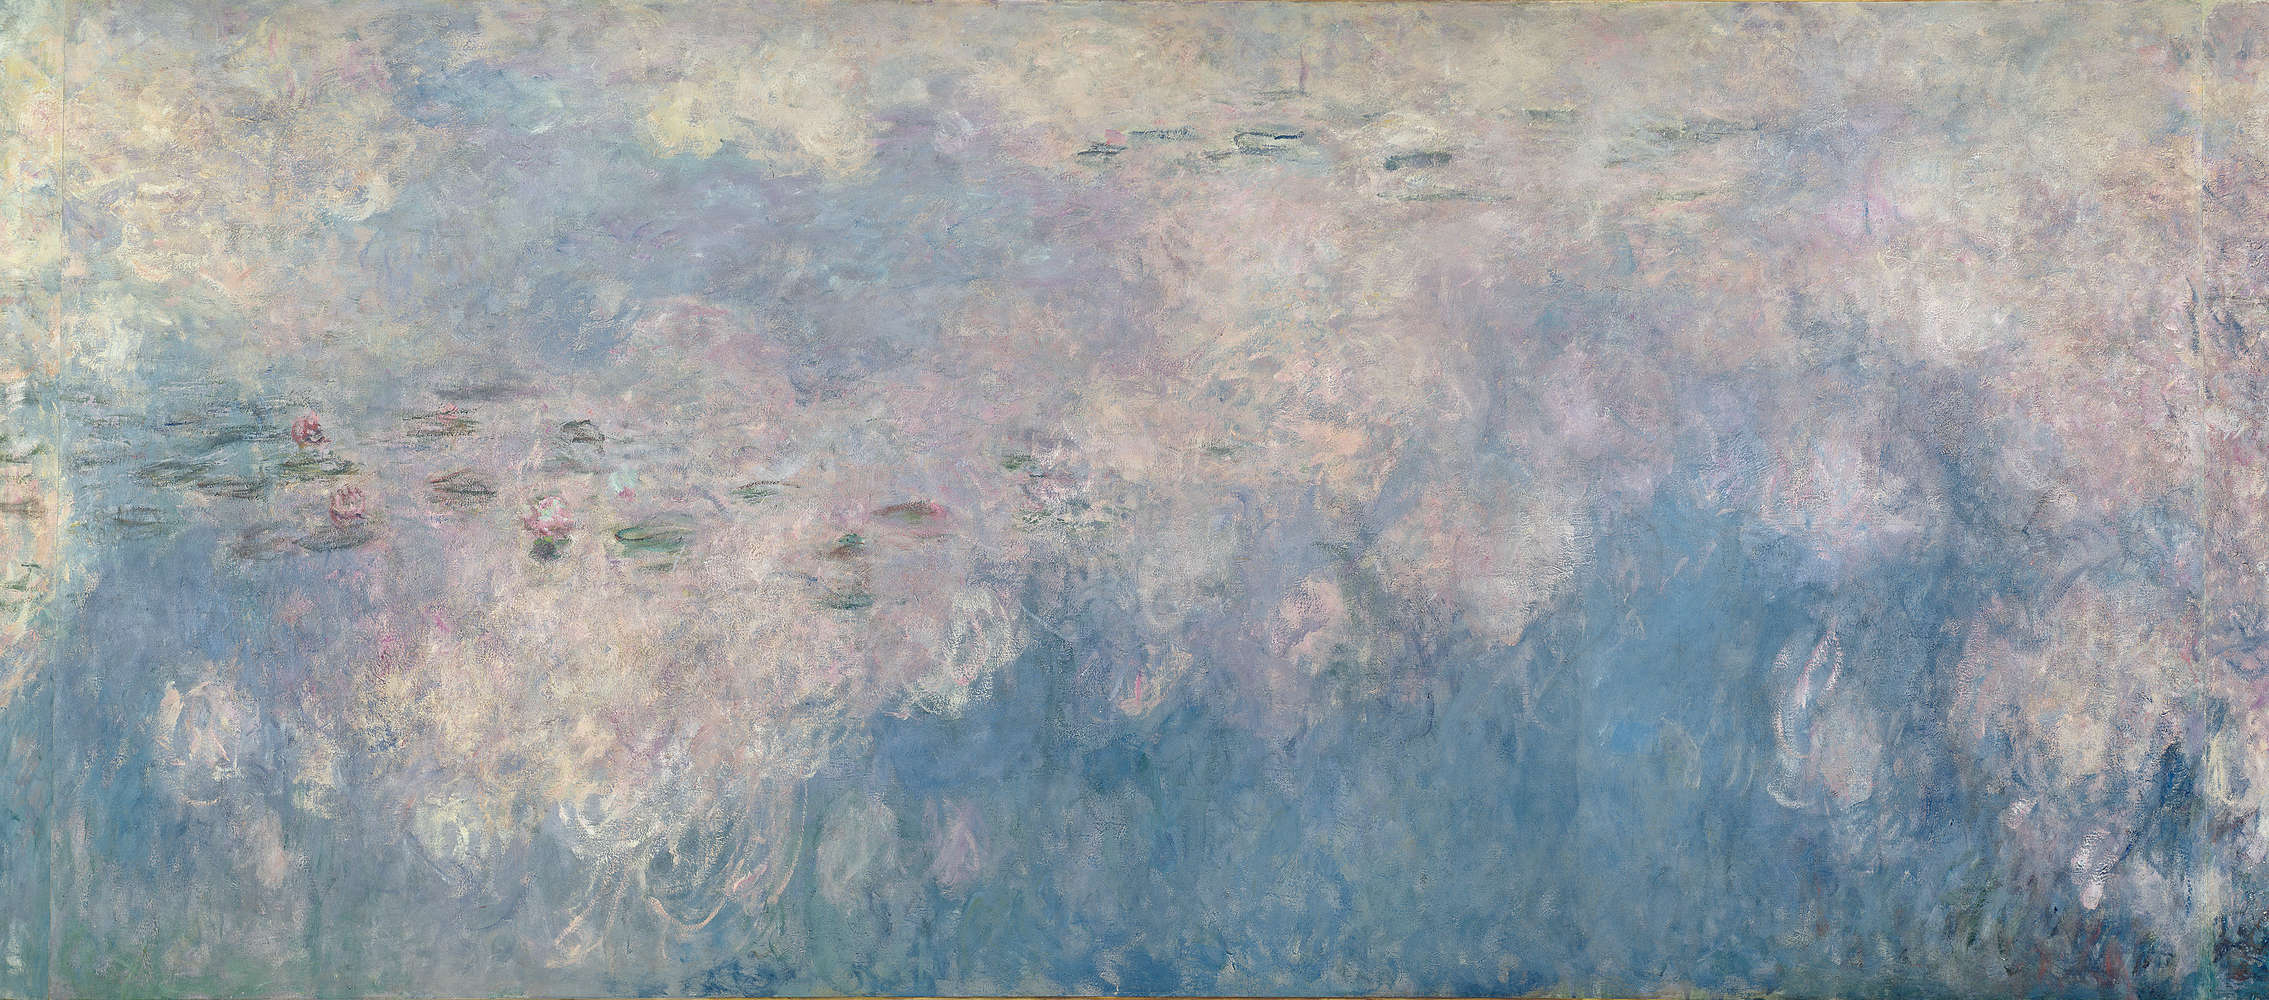             Papier peint panoramique "Les nénuphars Les nuages" de Claude Monet
        